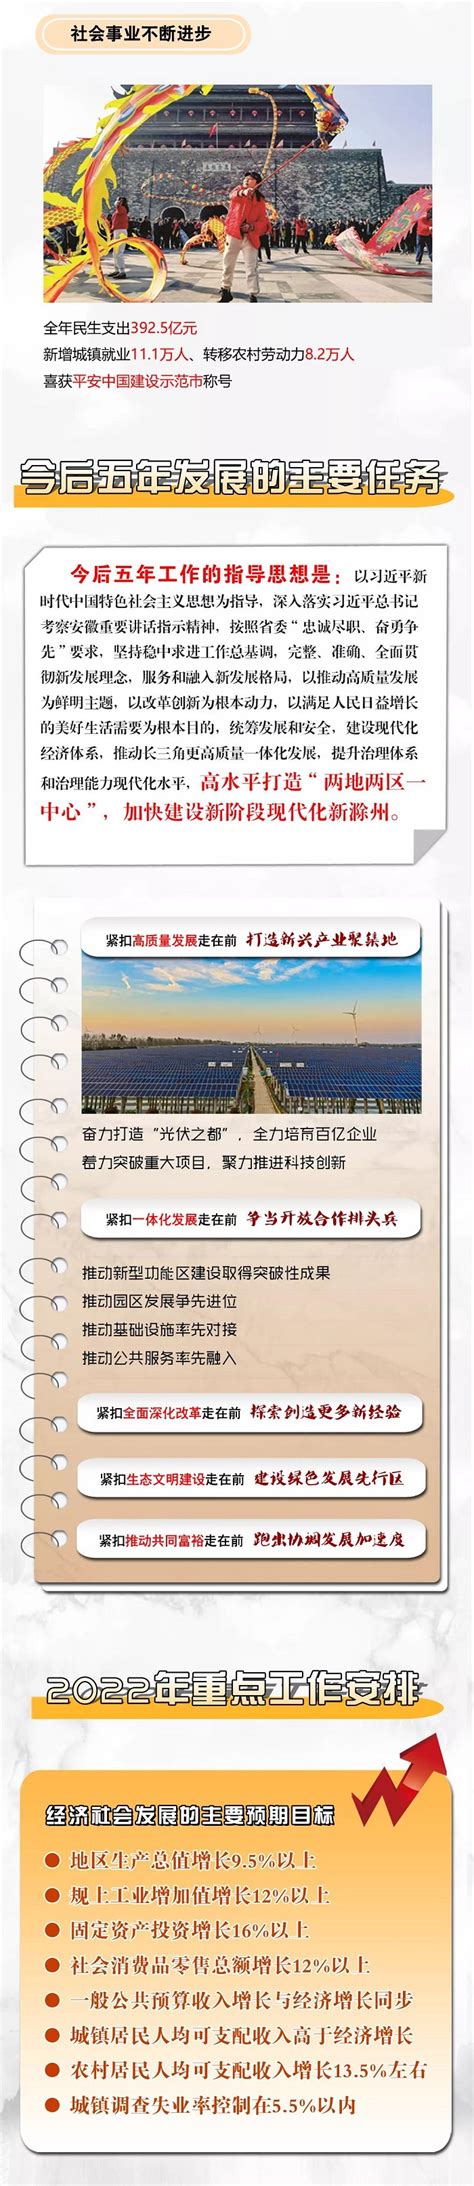 【图表图解】2022年滁州市政府工作报告